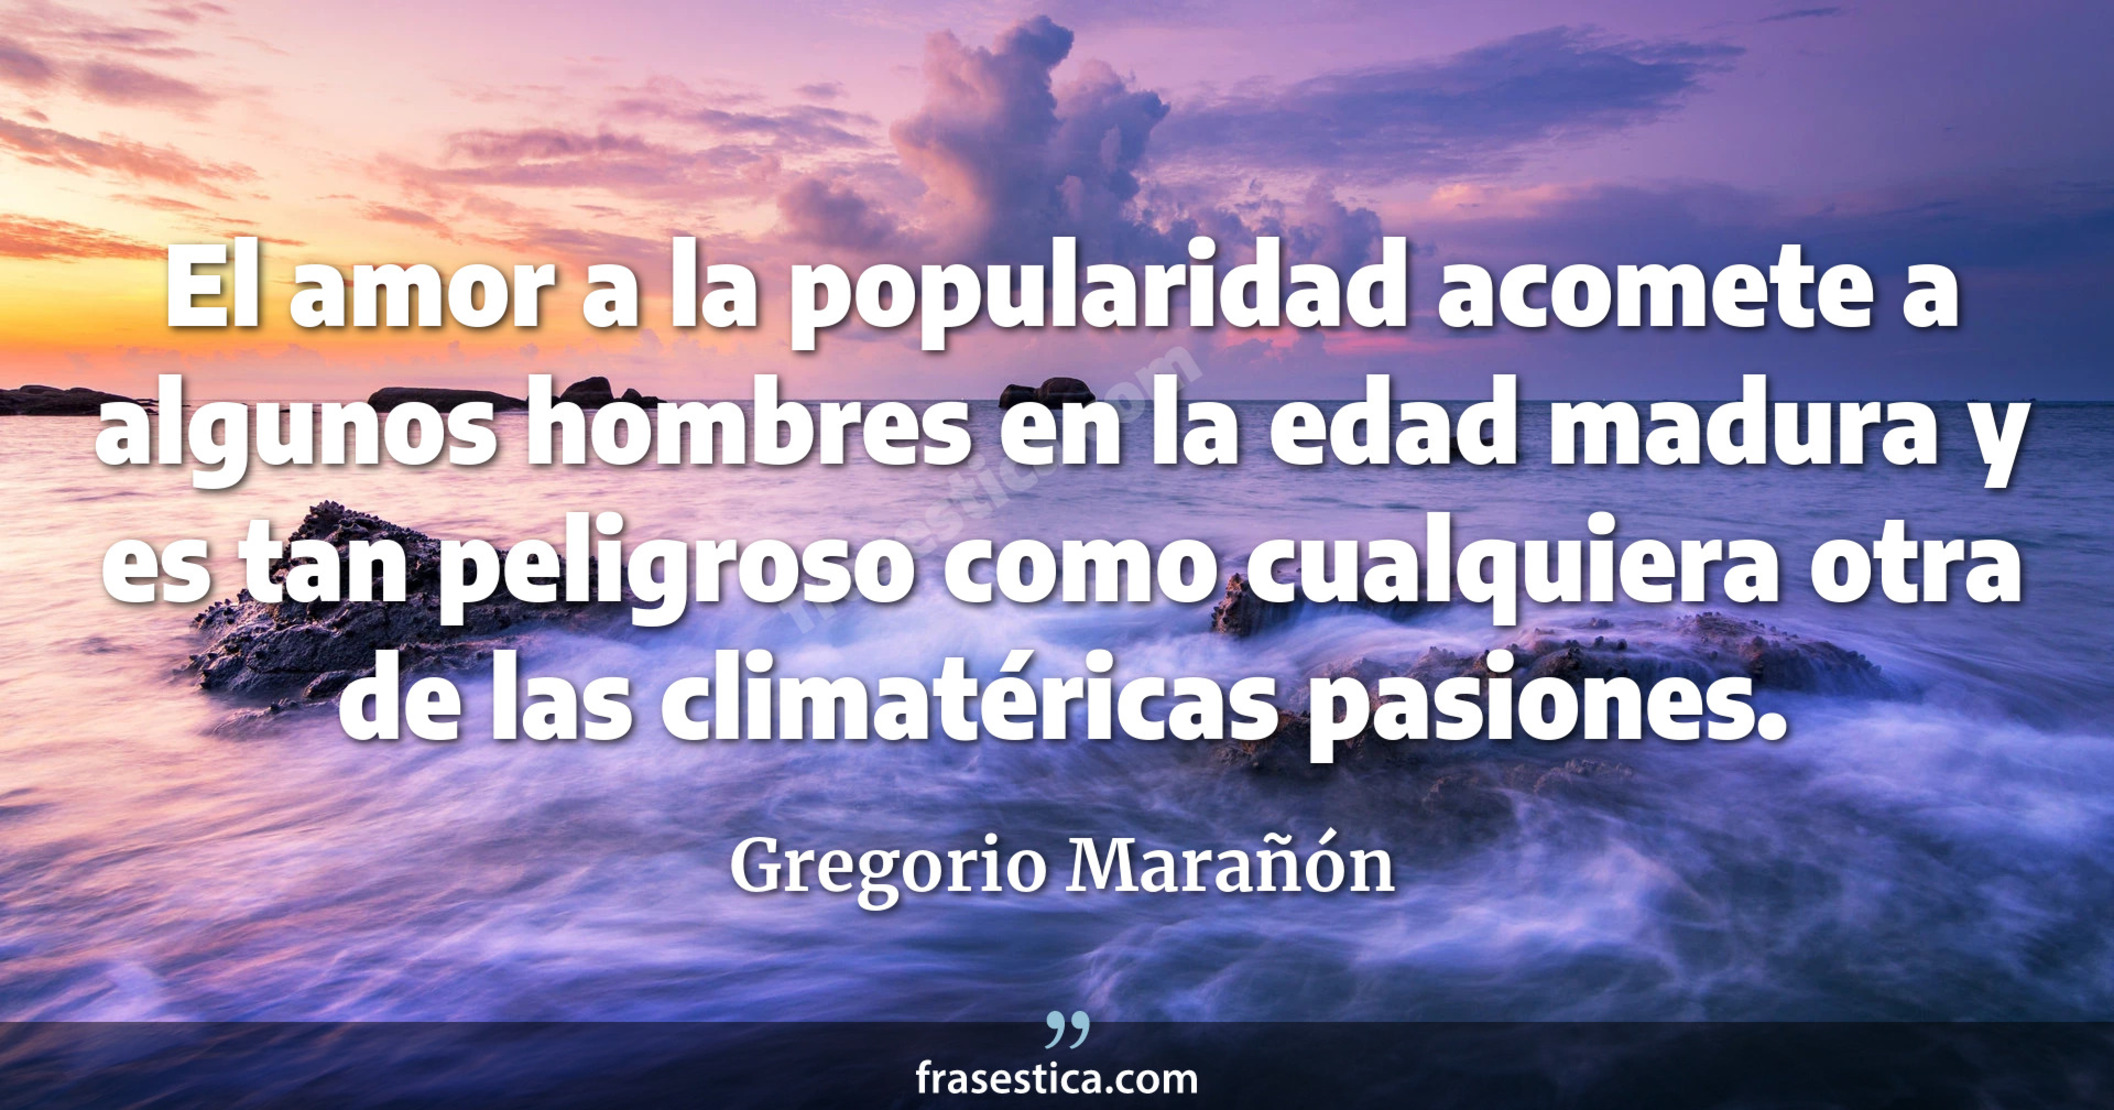 El amor a la popularidad acomete a algunos hombres en la edad madura y es tan peligroso como cualquiera otra de las climatéricas pasiones. - Gregorio Marañón